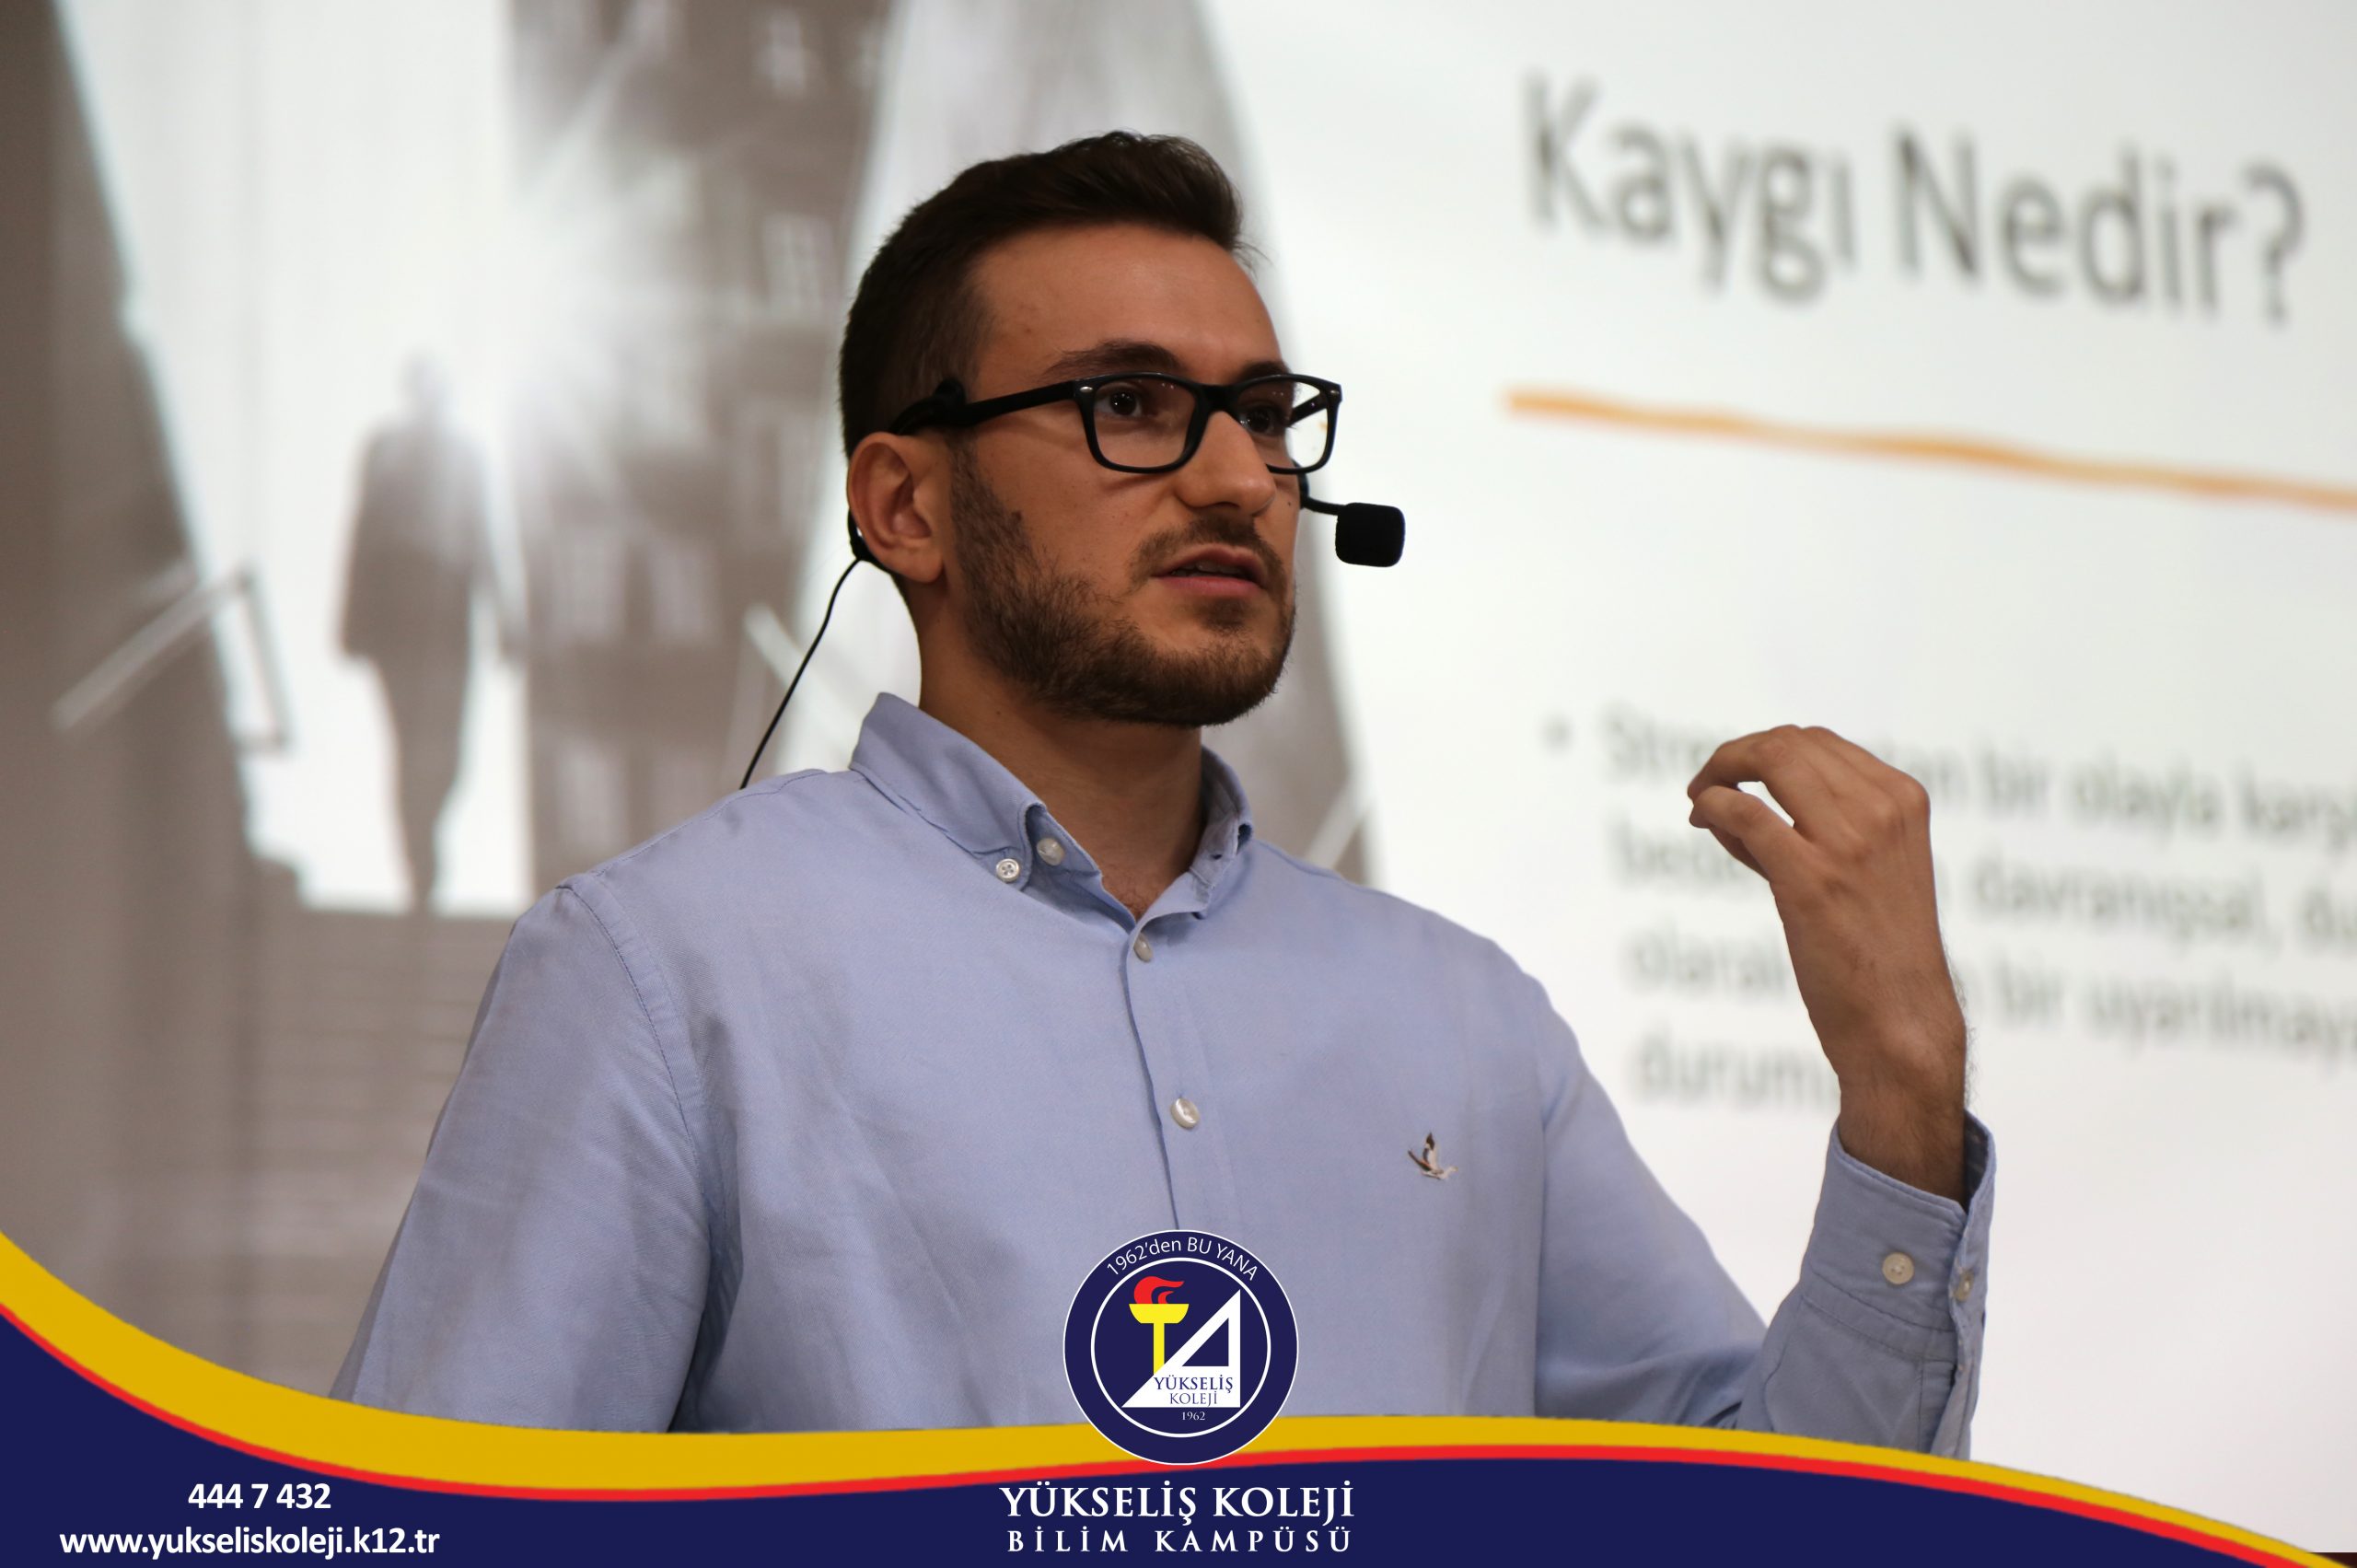 Psikolog Uğur Seküçoğlu tarafından verilen seminerde “LGS Yolunda Kaygı ile Mücadele” konusu üzerinde duruldu.